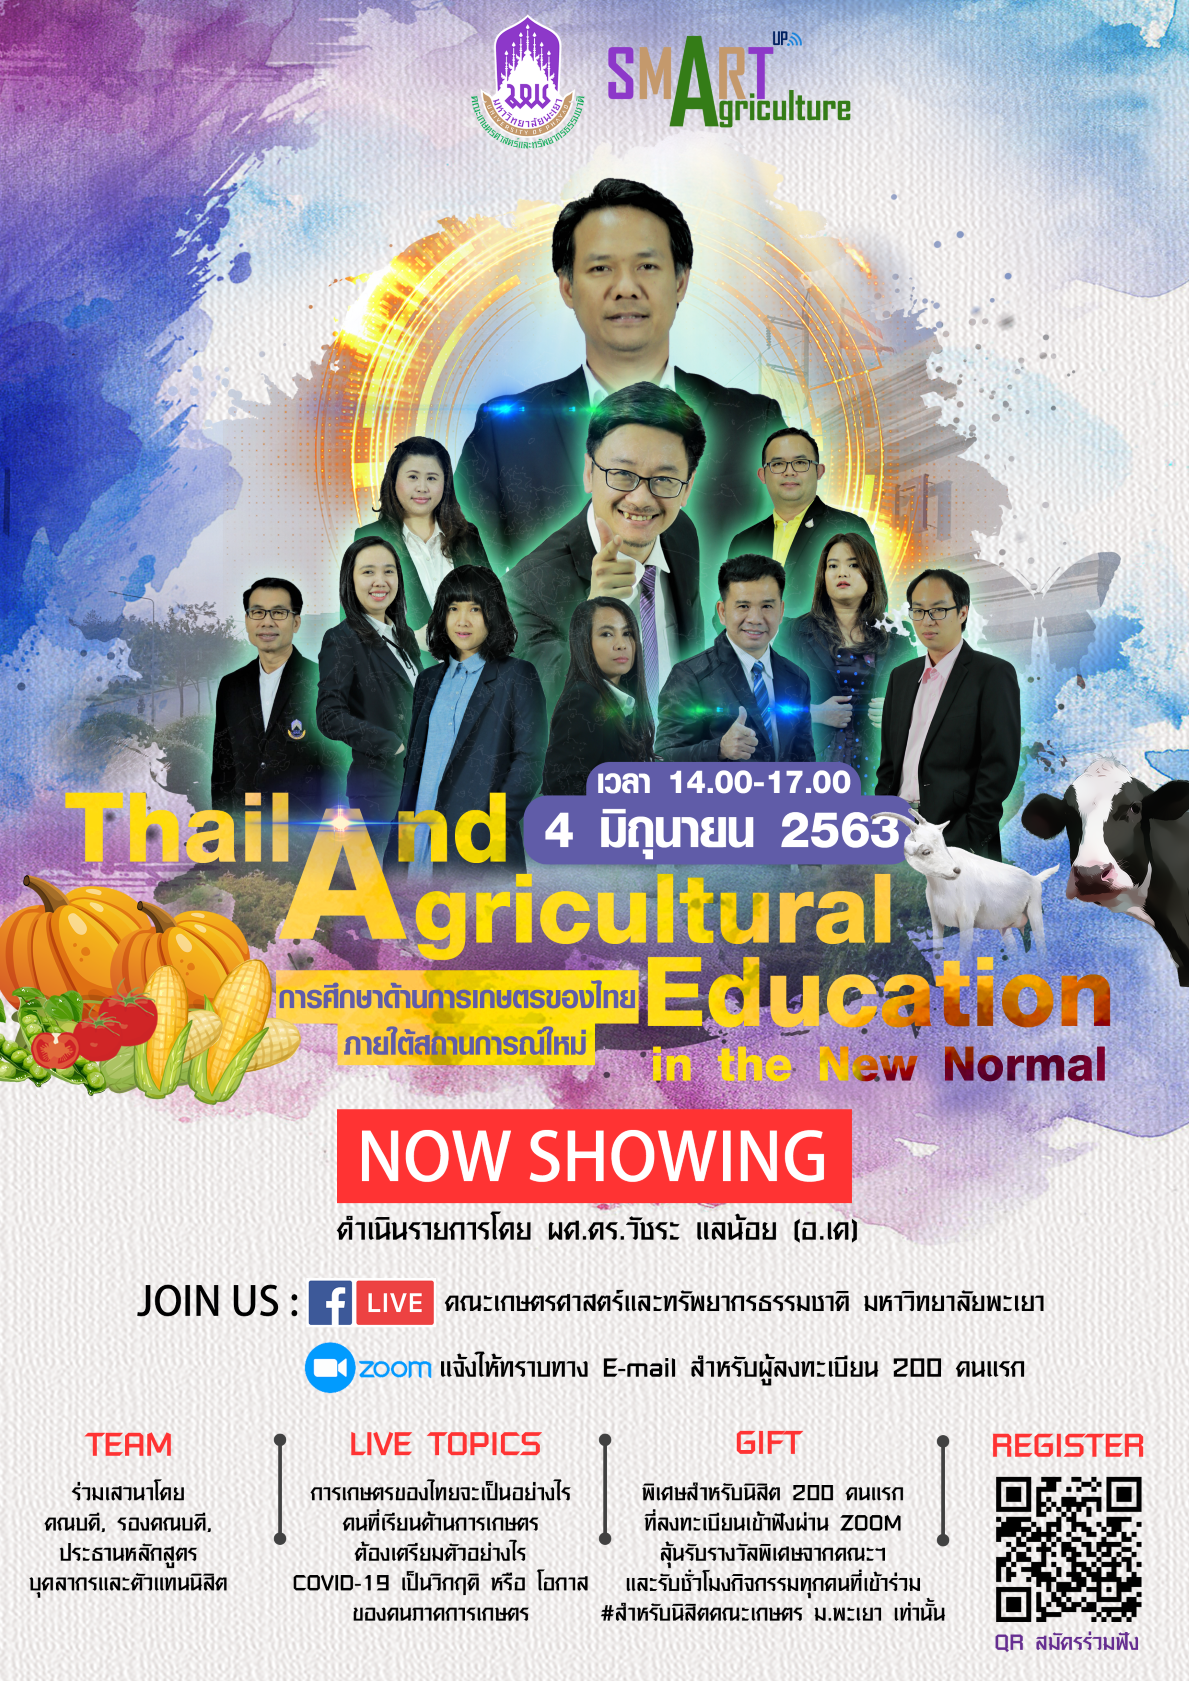 Thailand Agricultural Education in the New Normal " การศึกษาด้านการเกษตรของไทย ภายใต้สถานการณ์ใหม่ " 04.06.2020